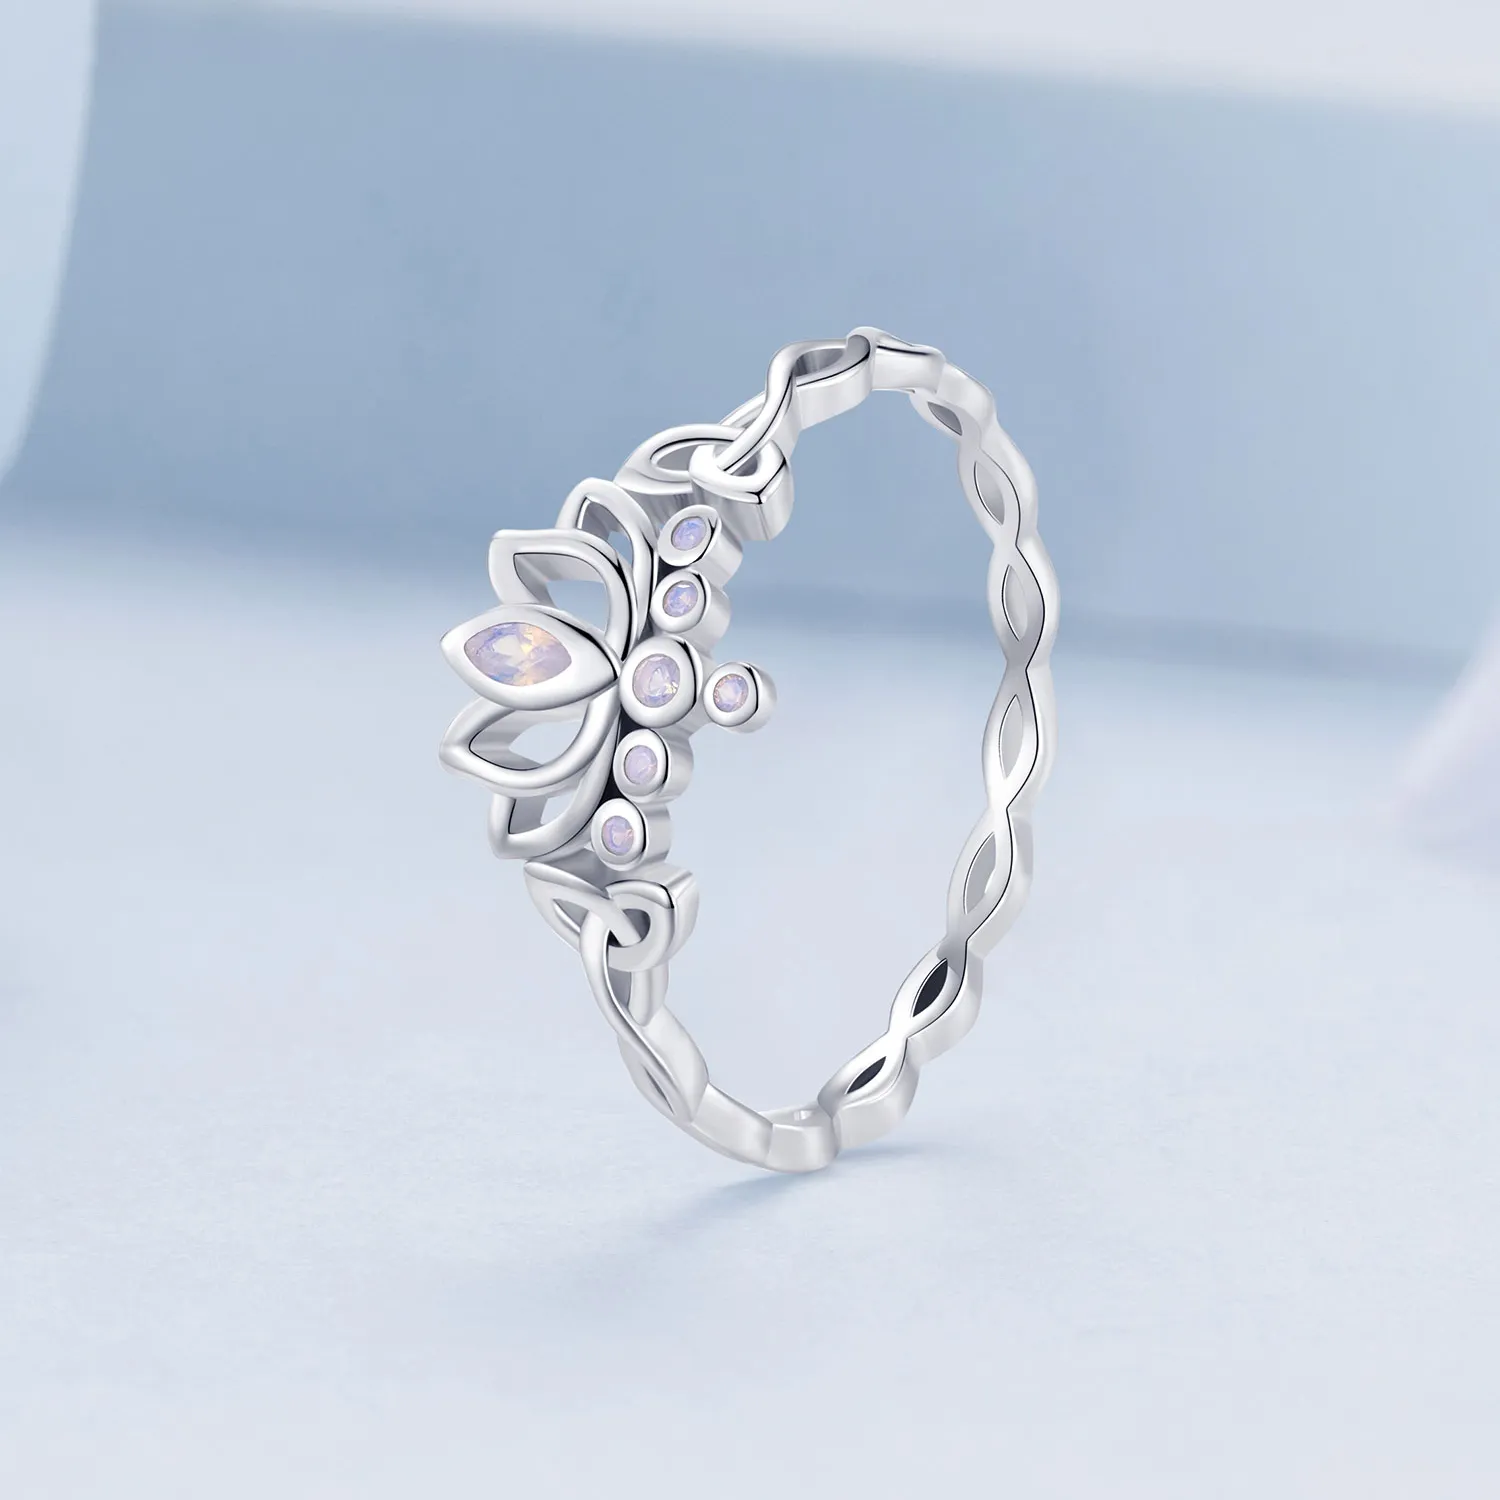 Pandora Style Lotus Ring - BSR487